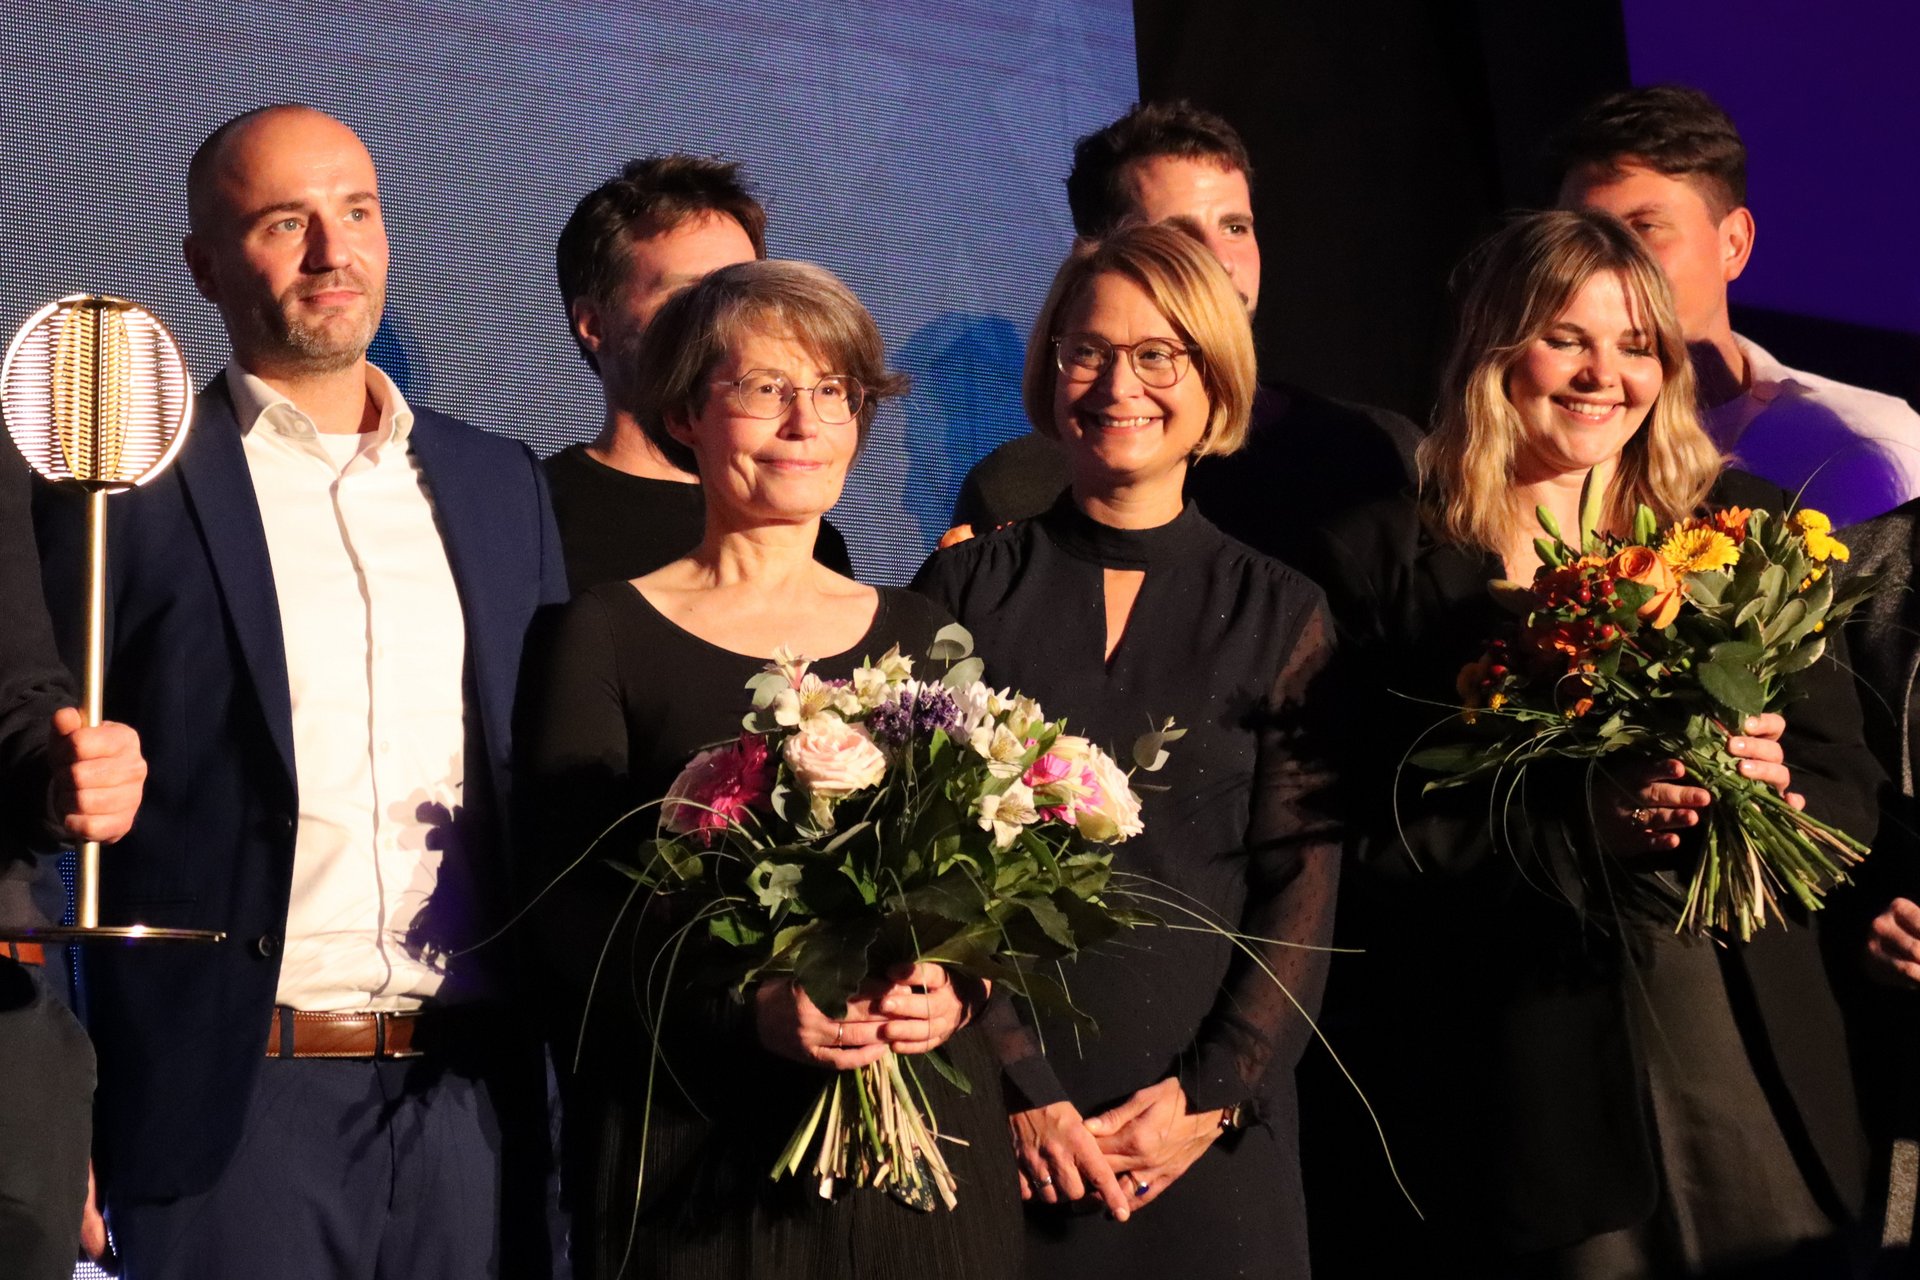 Auf der Bühne: Dr. Birte Frenssen neben Birgit Hesse inmitten der anderen Preisträgerinnen und Preisträger. Detail eines größeren Gruppenbildes.